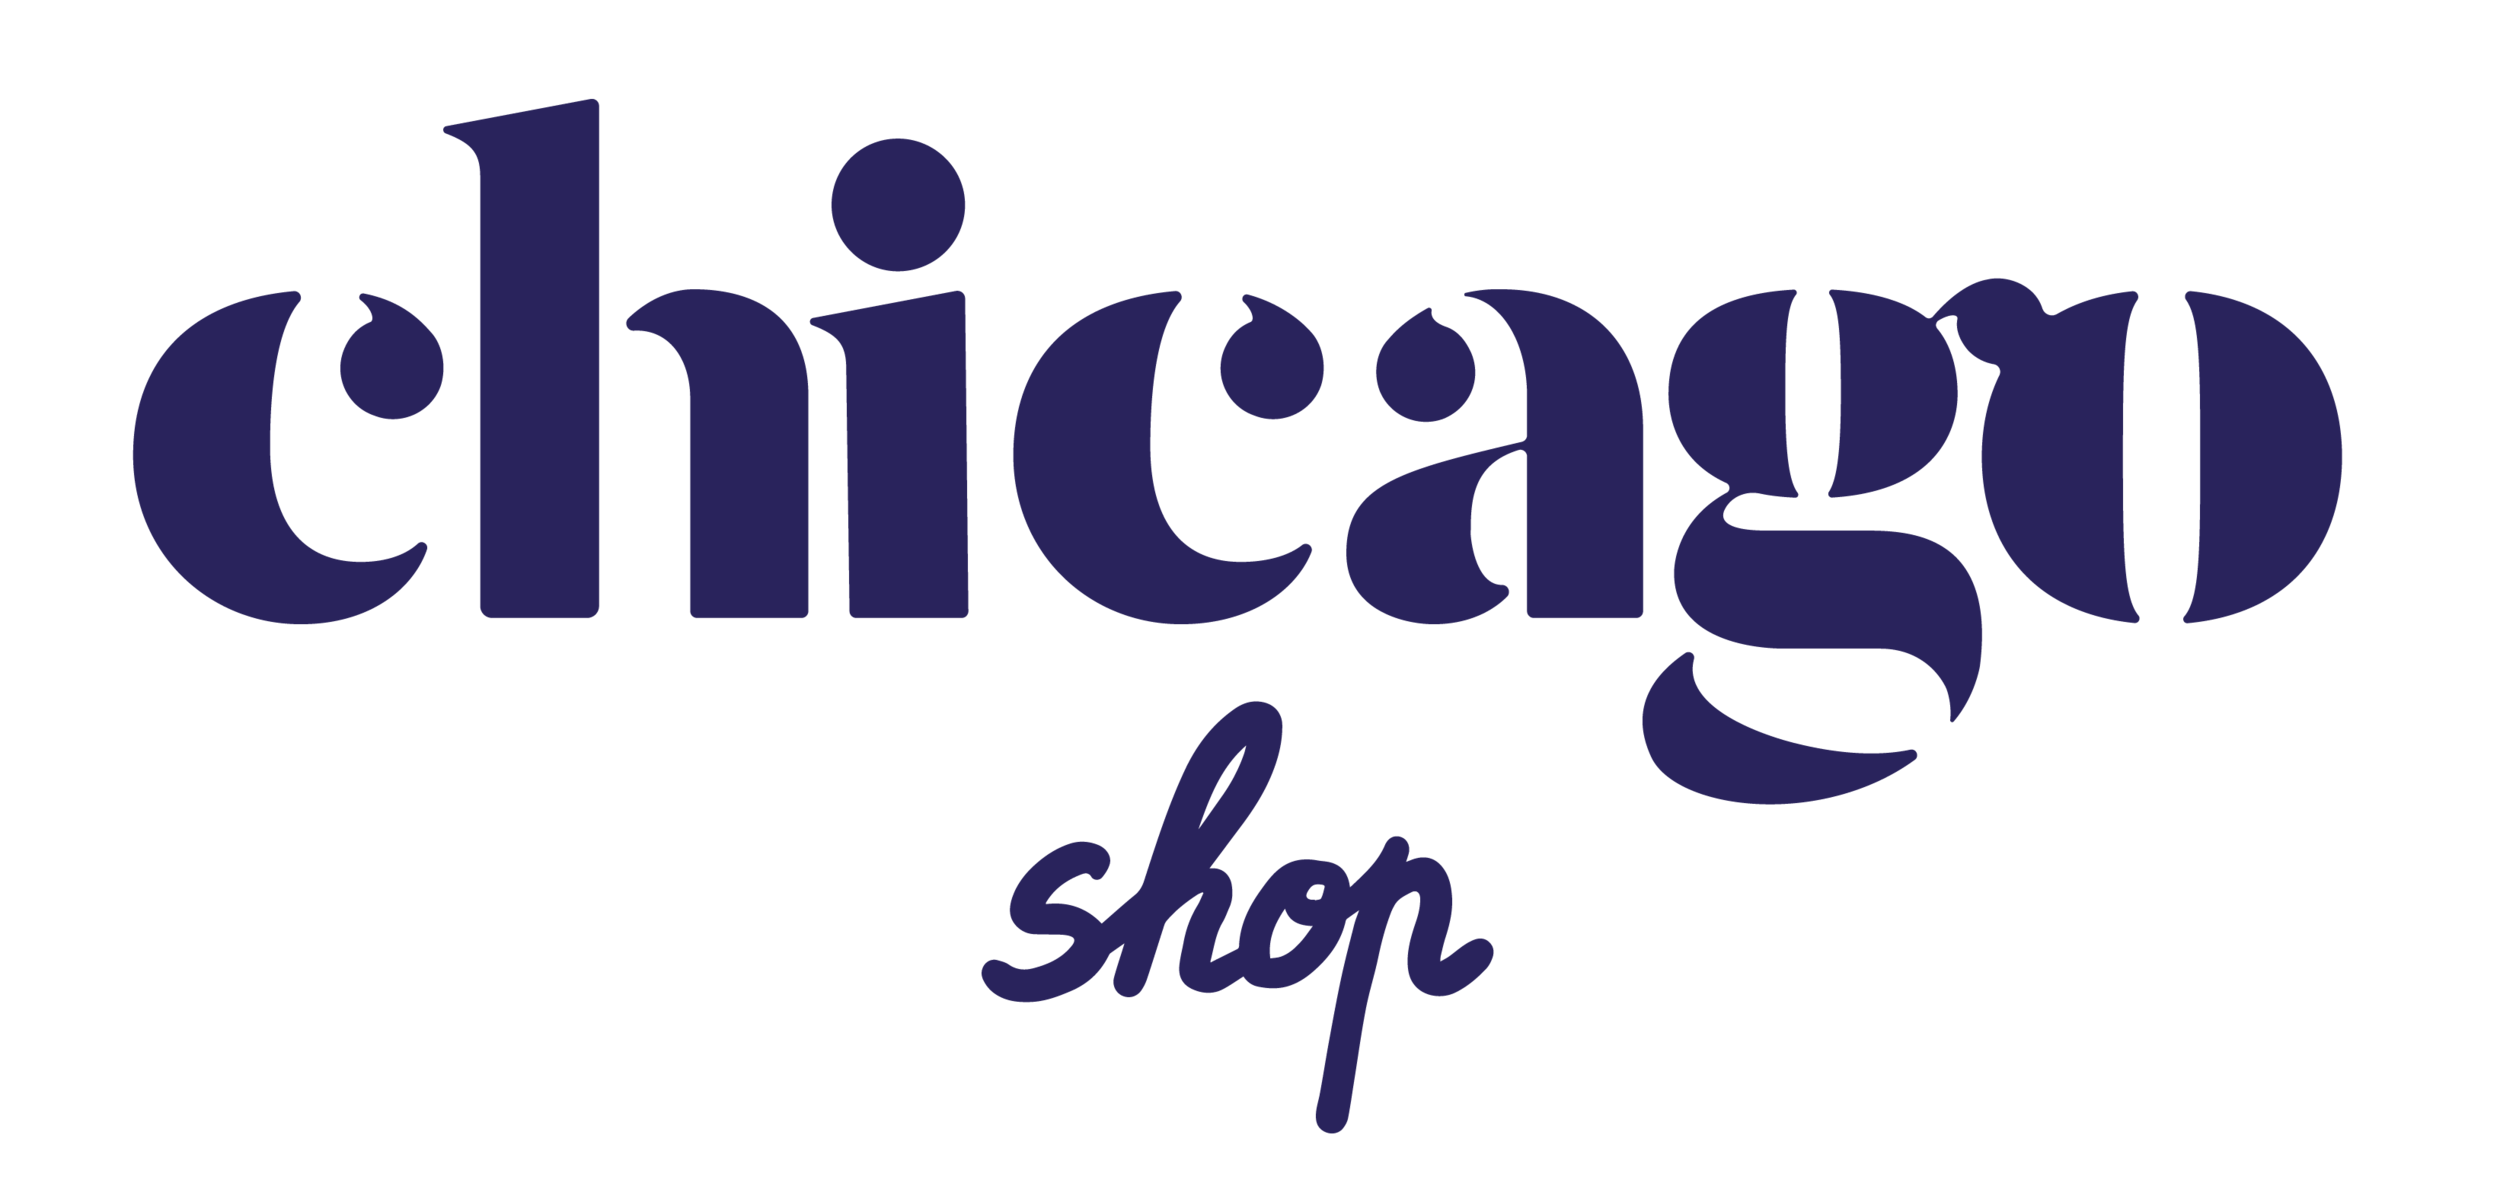 Chicago Café